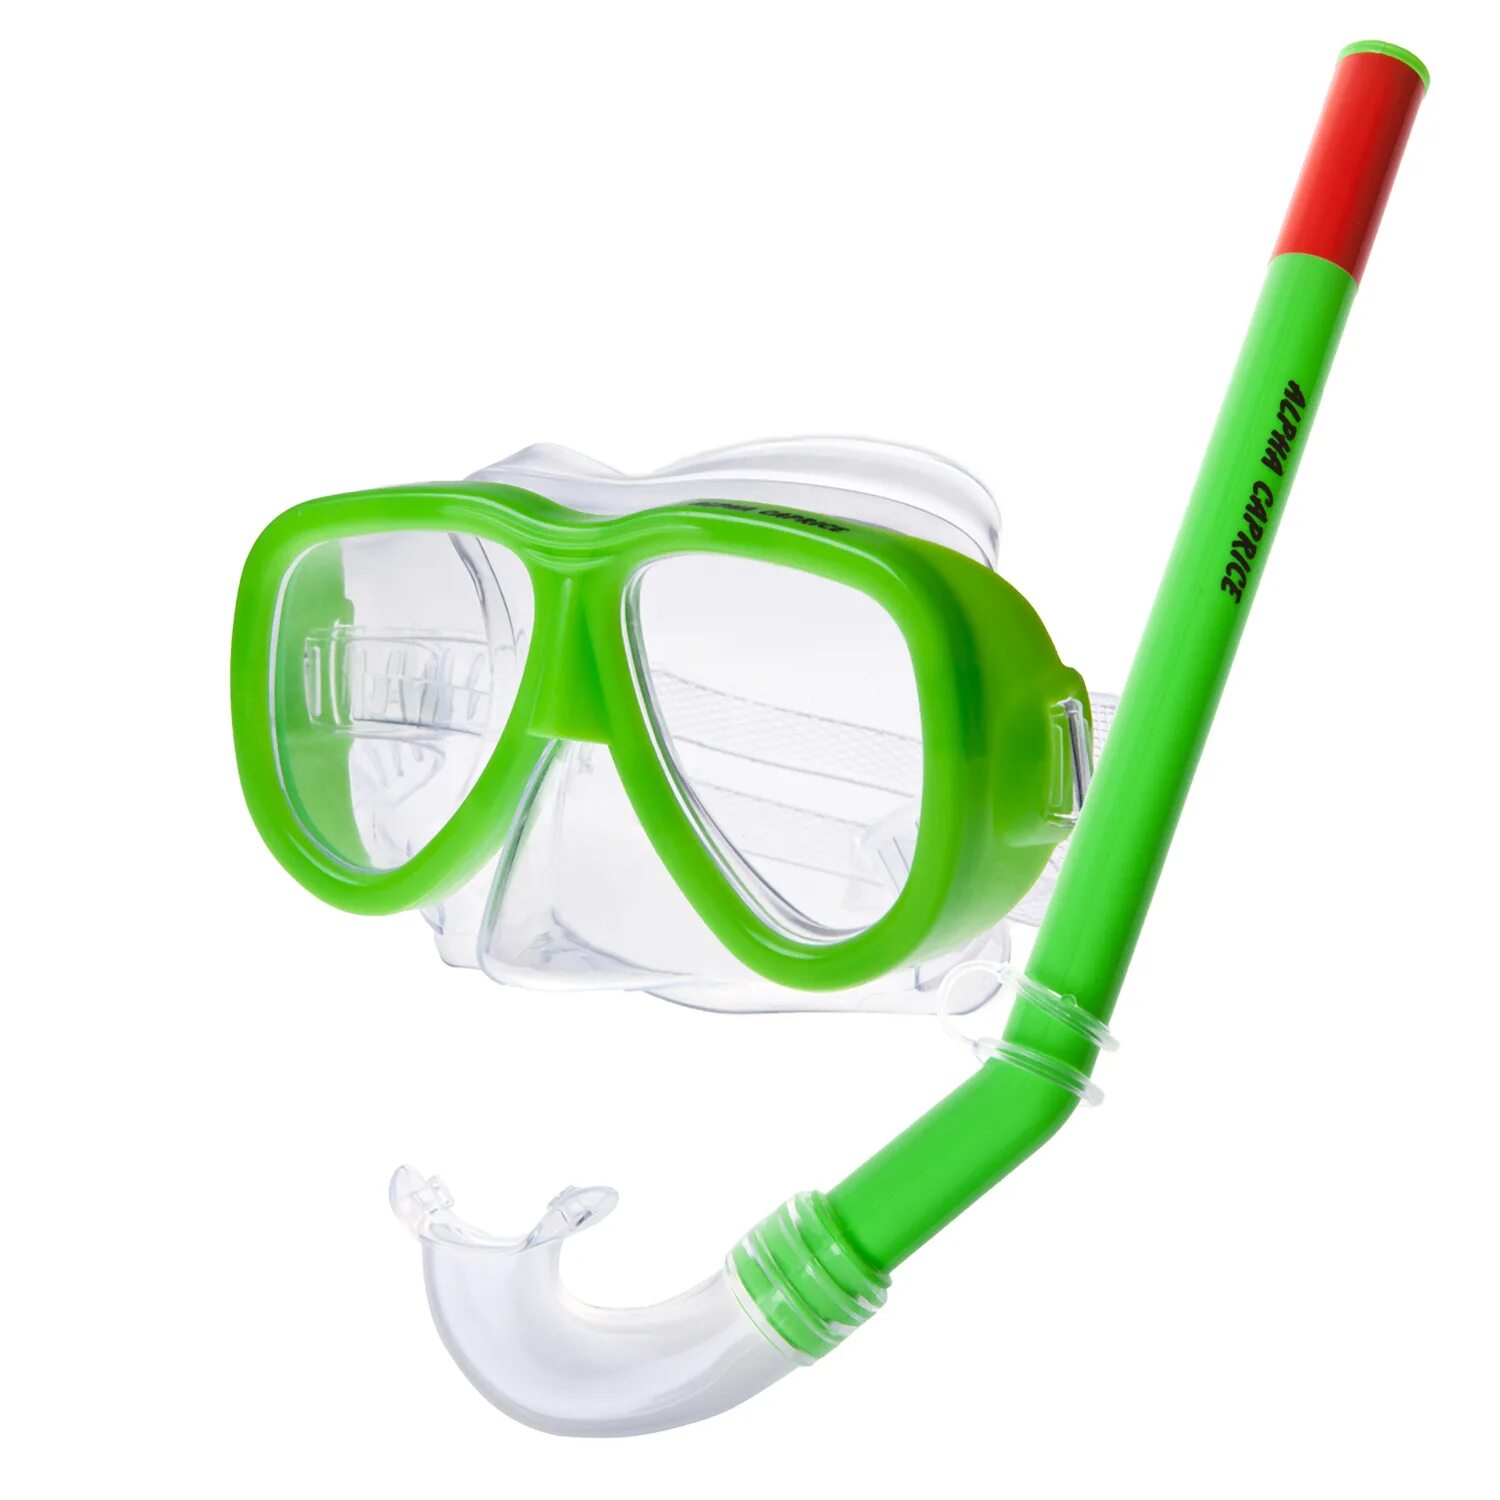 Комплект для плавания маска-трубка PVC Alpha Caprice MS-1010s37 02rbl. Маска трубка Альфа каприз. Набор для плавания (маска+трубка) 5143884. Alpha Caprice маска с трубкой для плавания. Маска для плавания москва